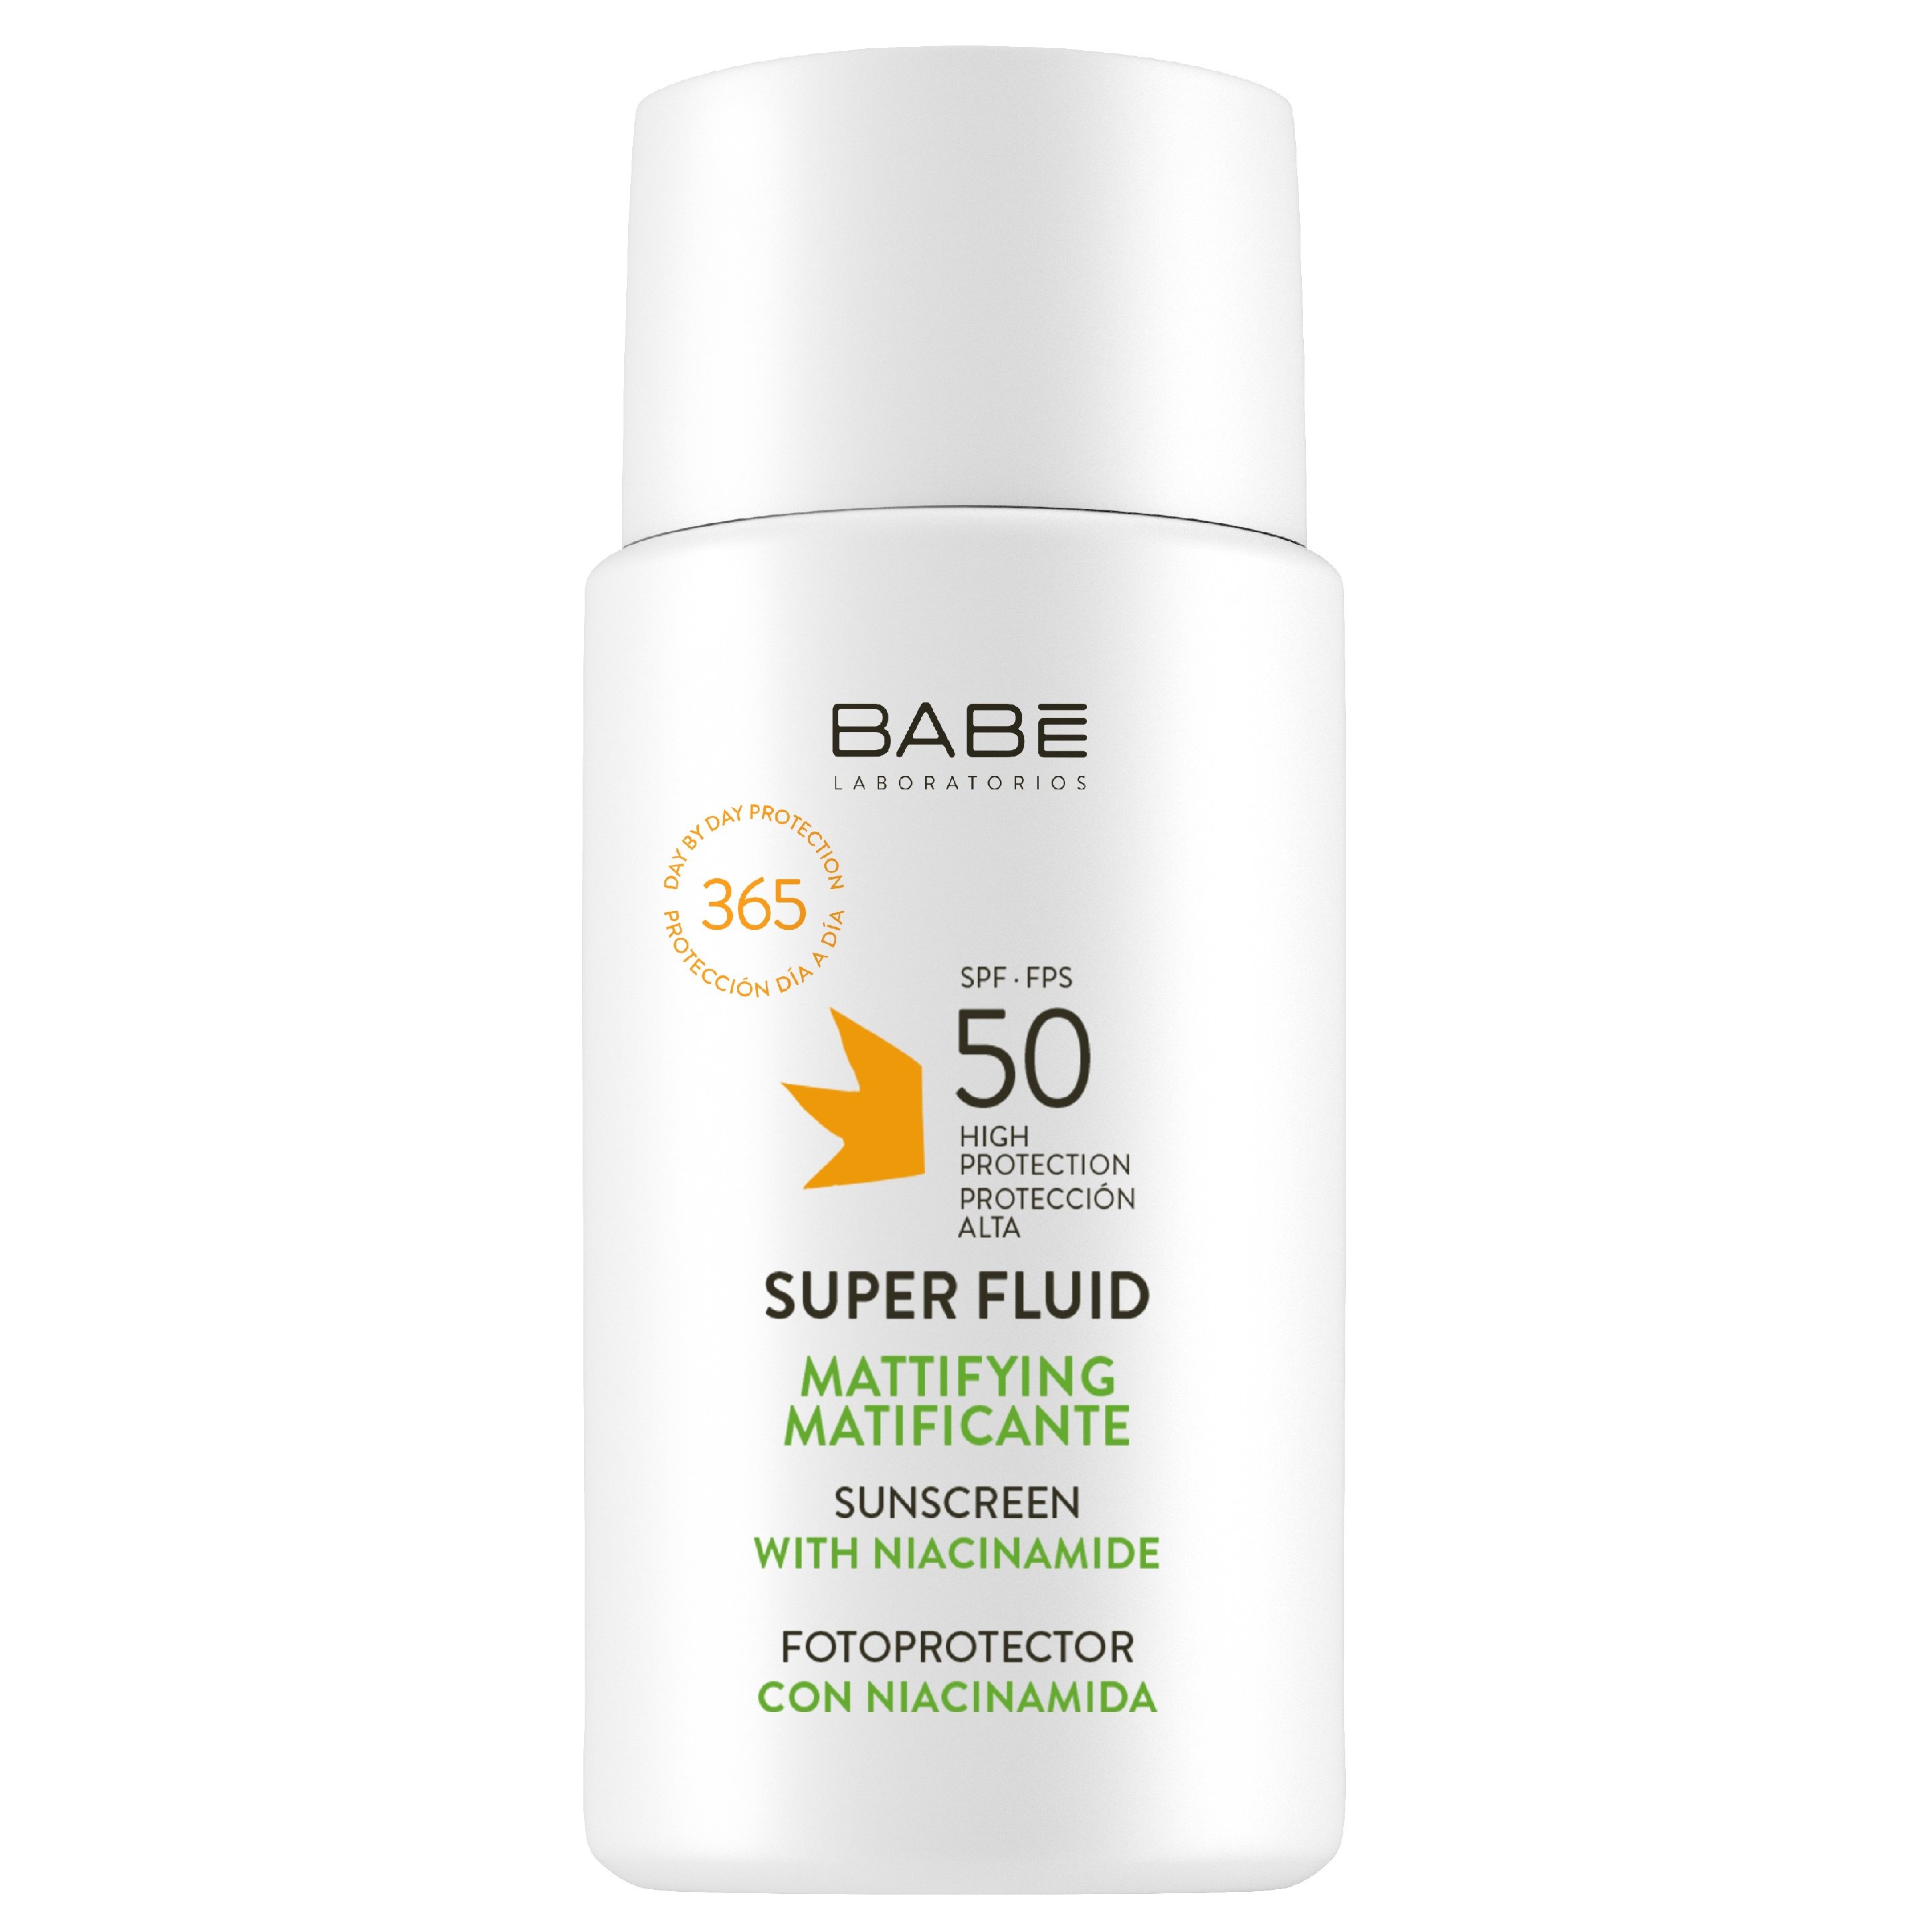 Солнцезащитный супер флюид Babe Laboratorios Sun Protection SPF 50, для всех типов кожи с матирующим эффектом, 50 мл - фото 1